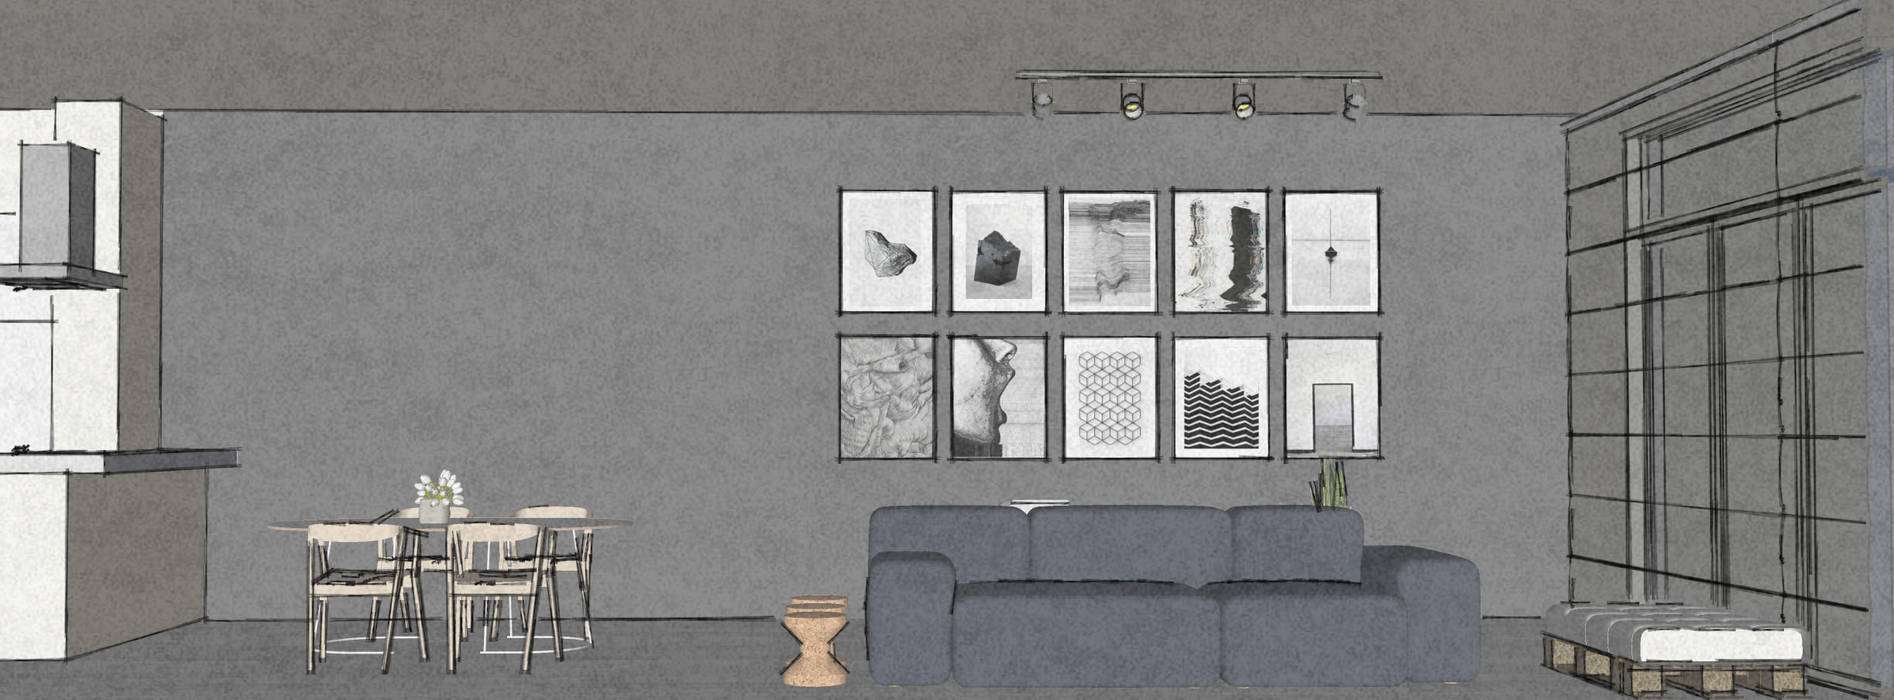 Living room MEL interiors Salas de estilo escandinavo Accesorios y decoración